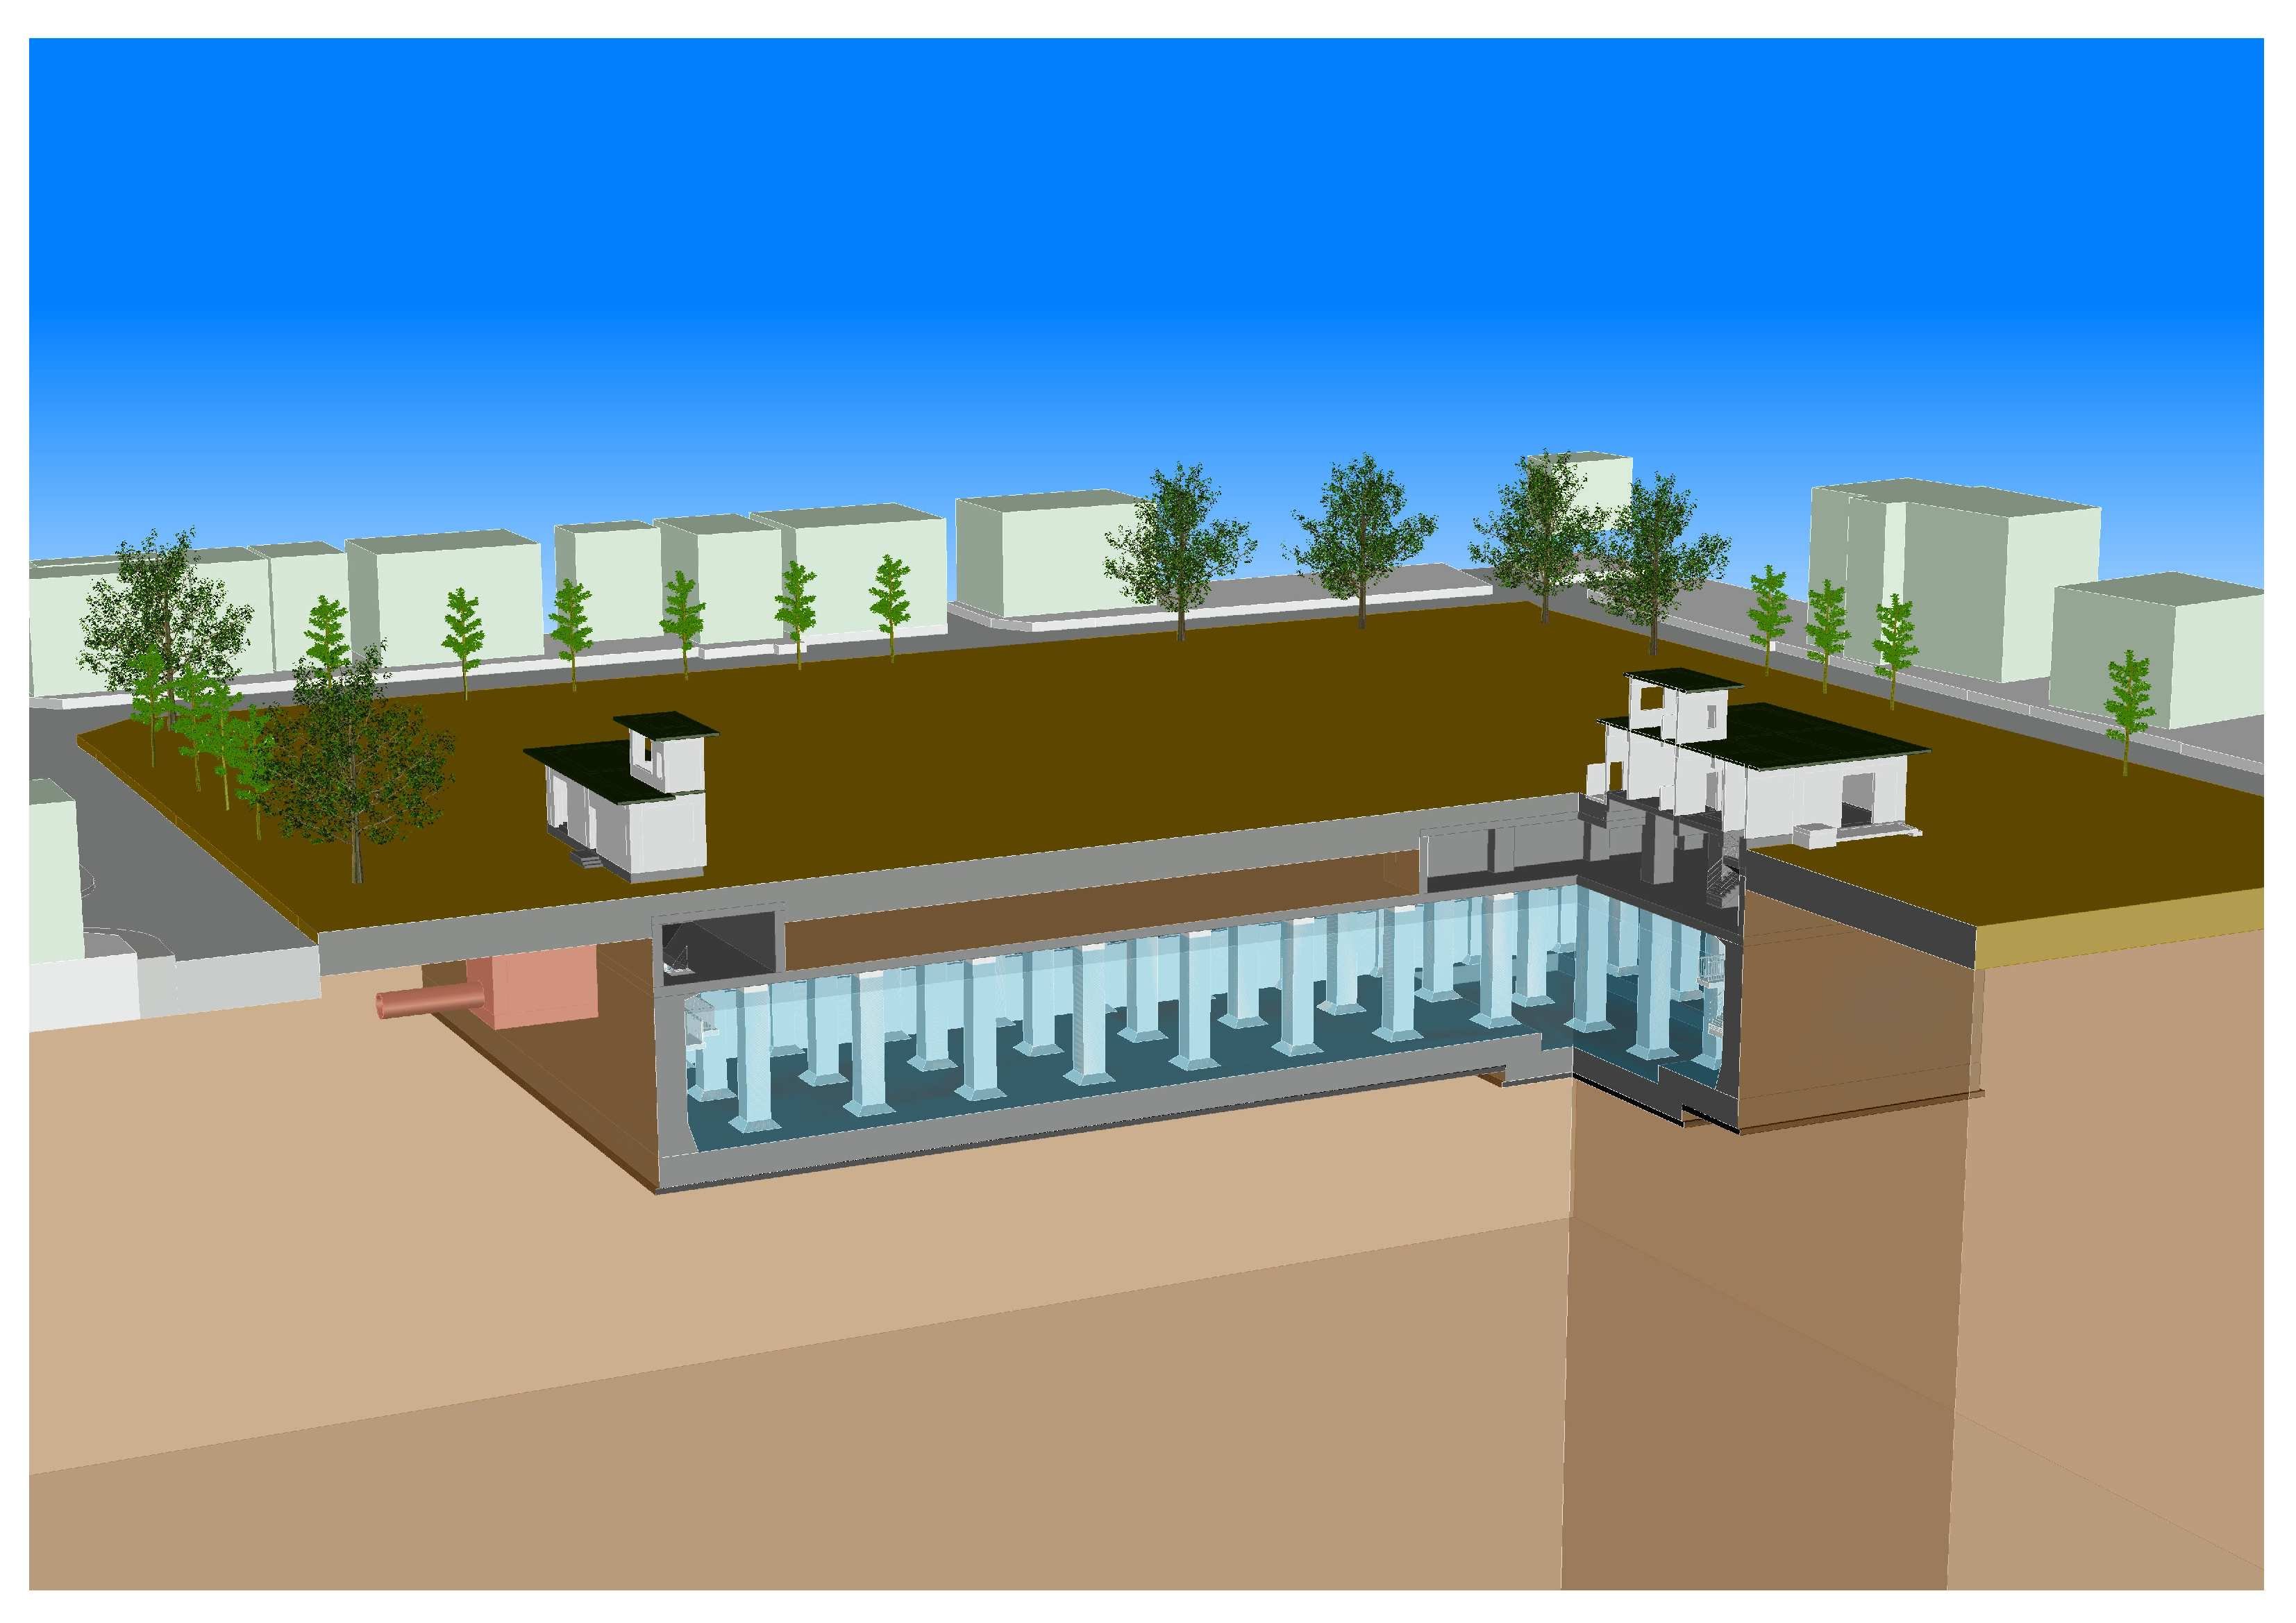 「一級河川　寝屋川布施公園調整池築造工事（土留工）」が竣工しました。